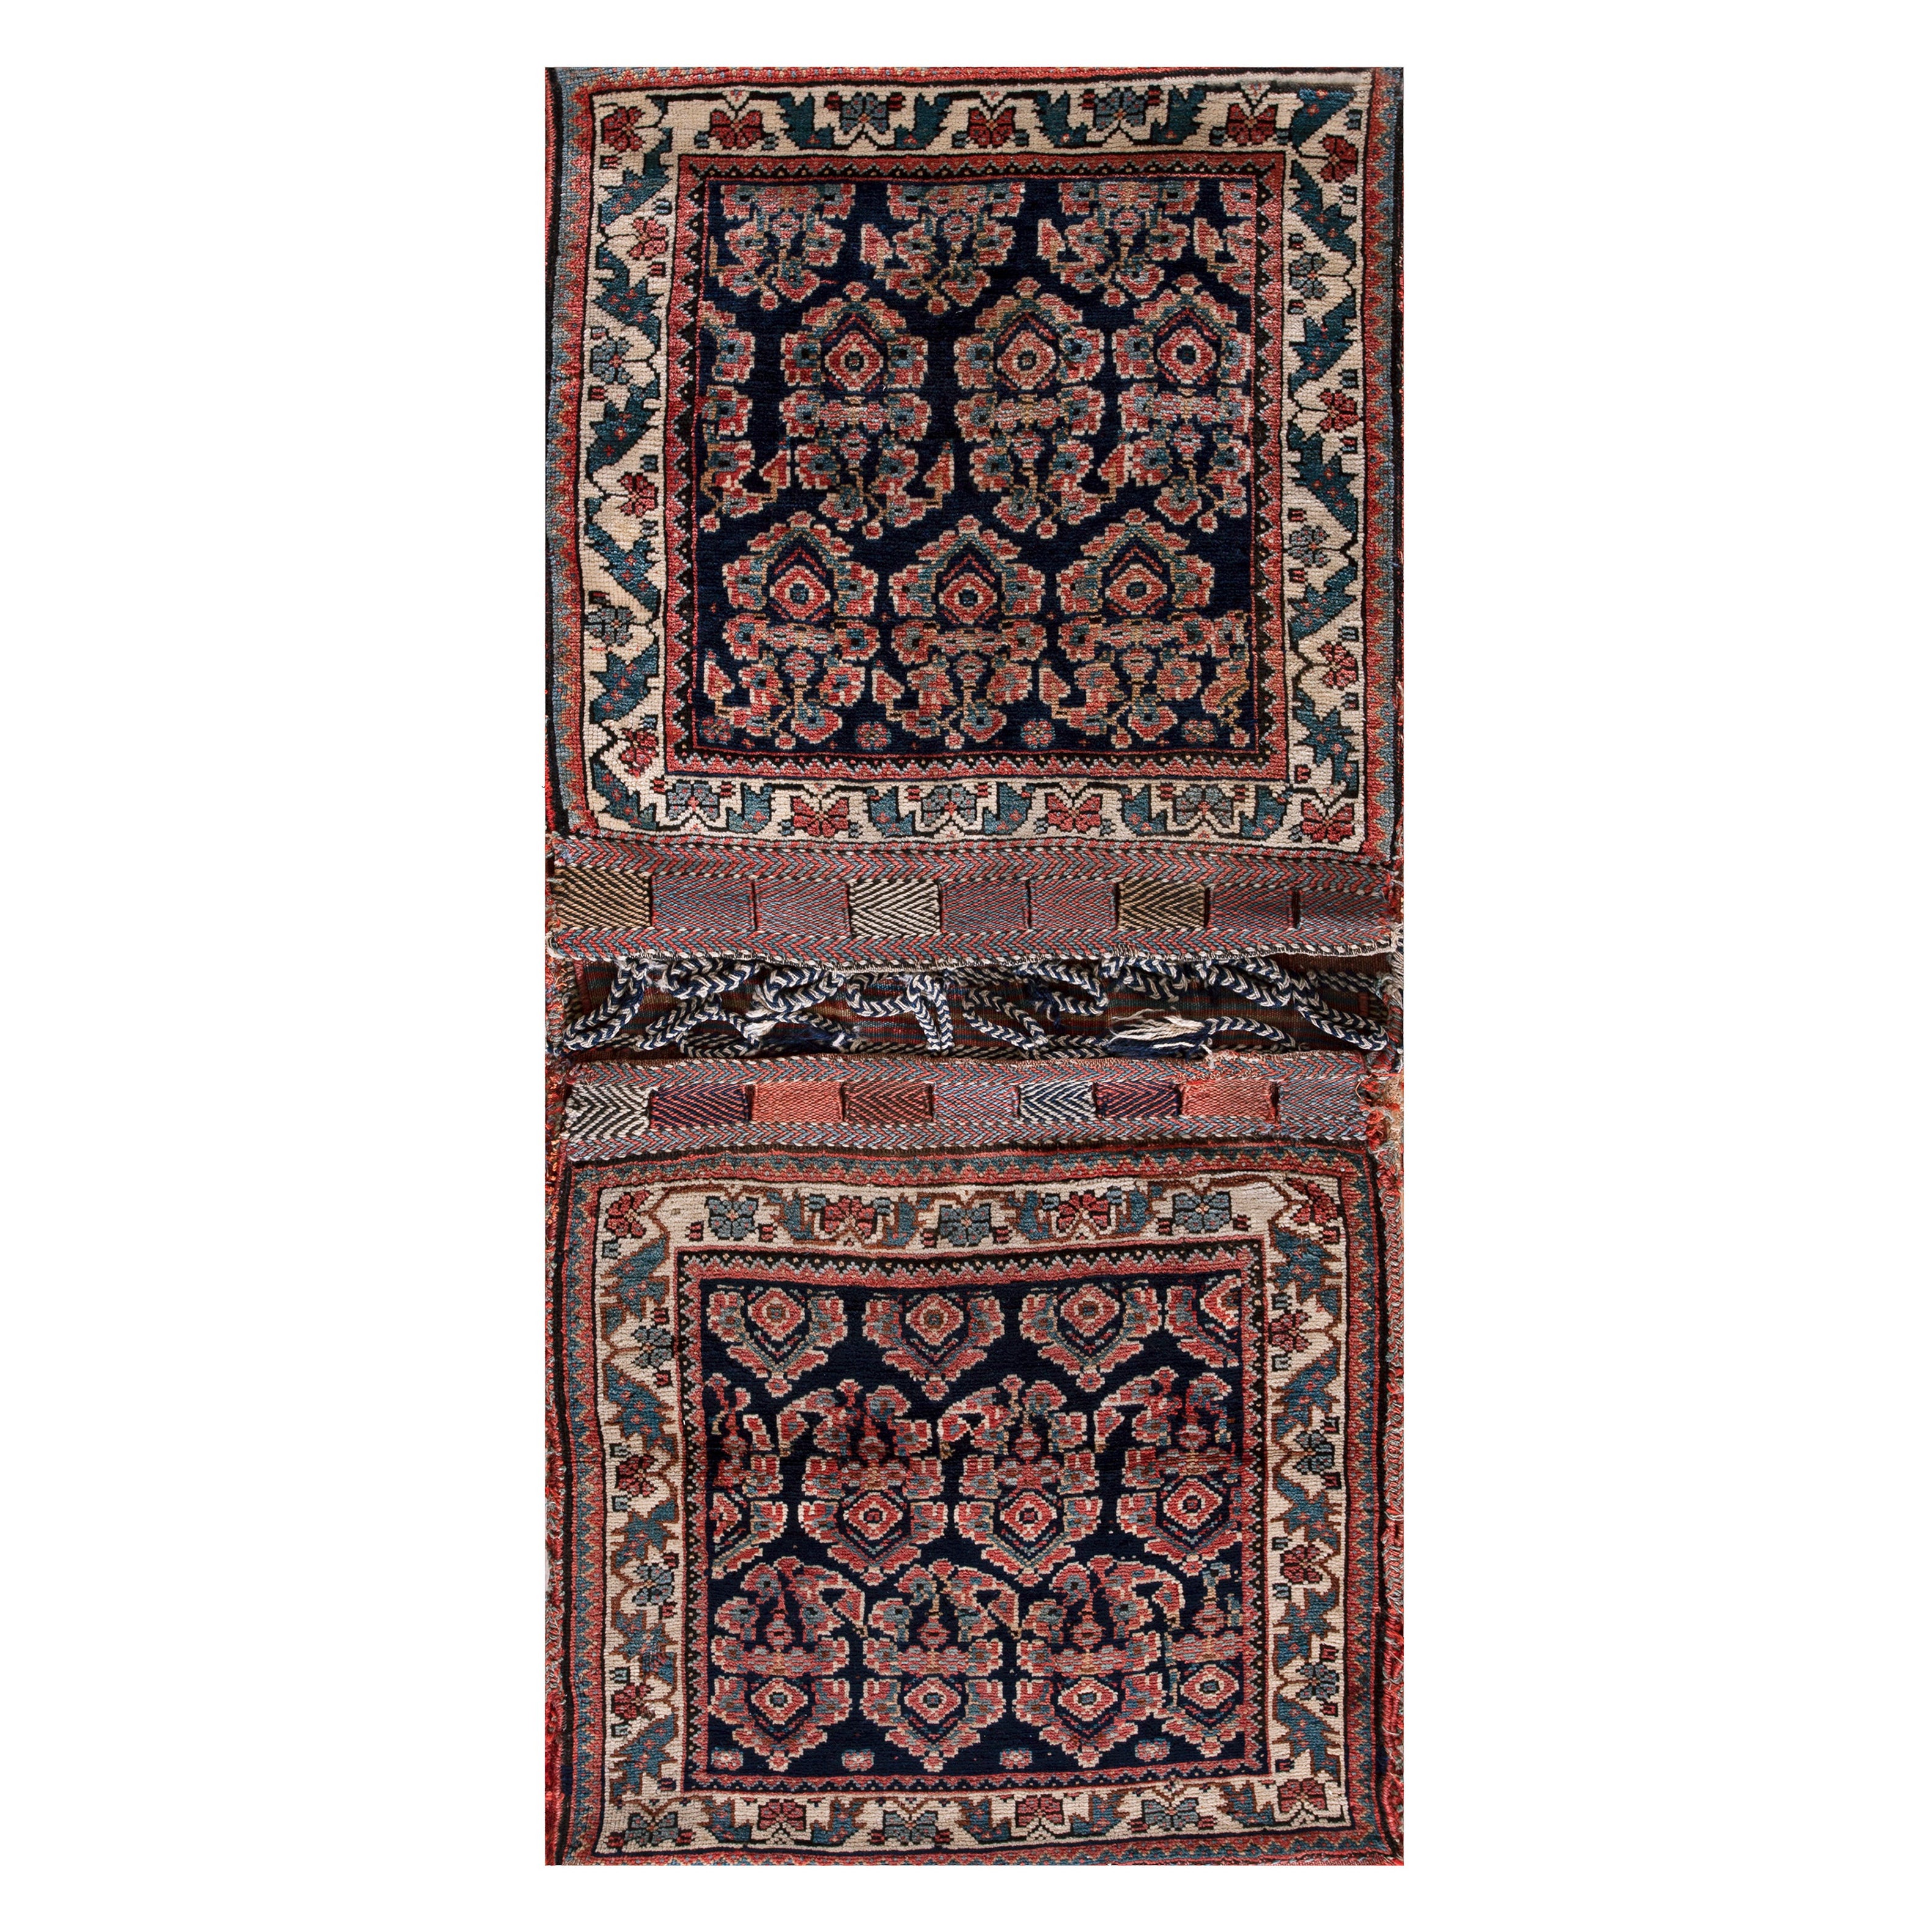 Persischer Afshar-Satteltaschenteppich aus dem späten 19. Jahrhundert ( 2' x 4'2" - 61 x 127")